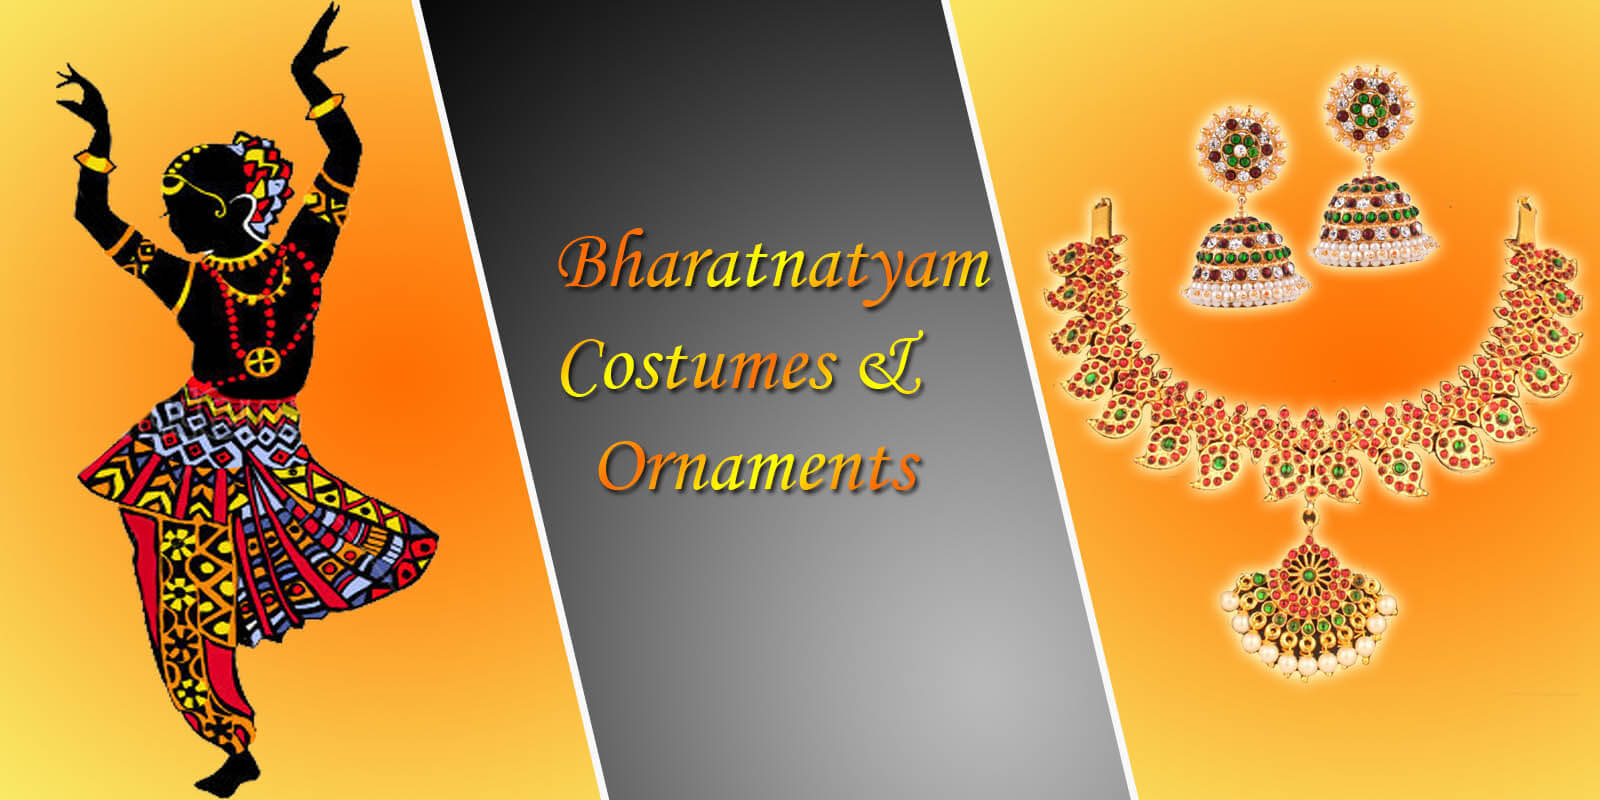 haratnatyam costumes and ornaments